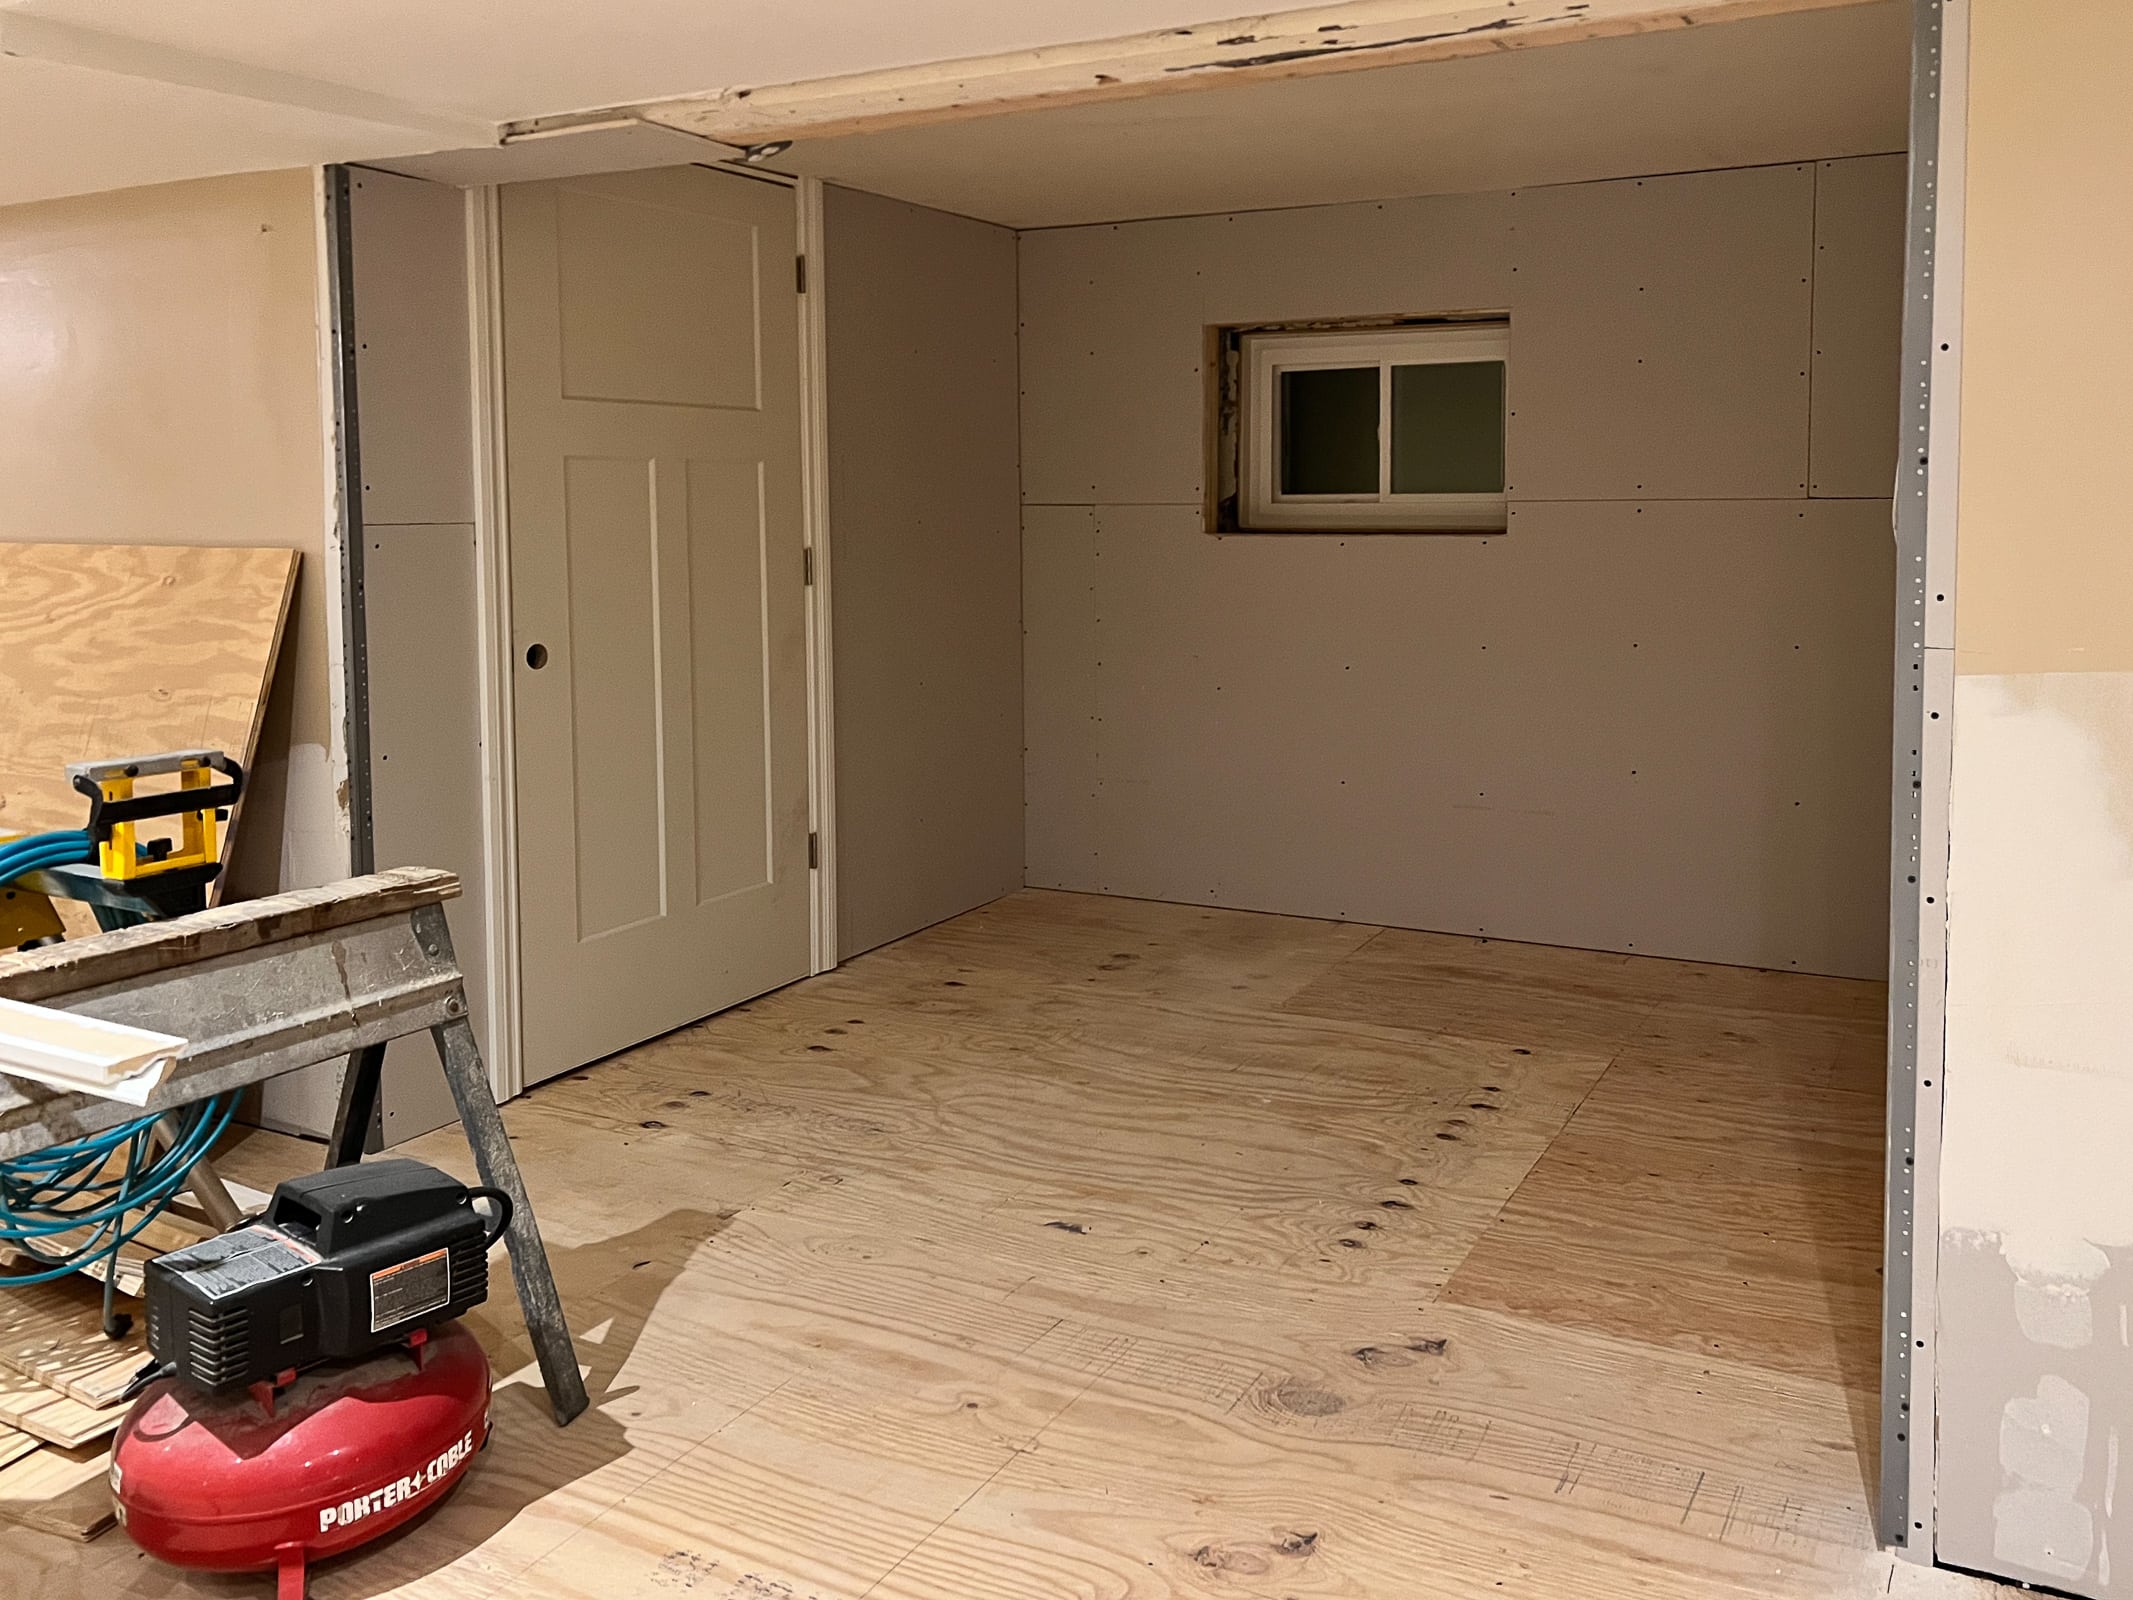 Our basement remodel progress 1 week in